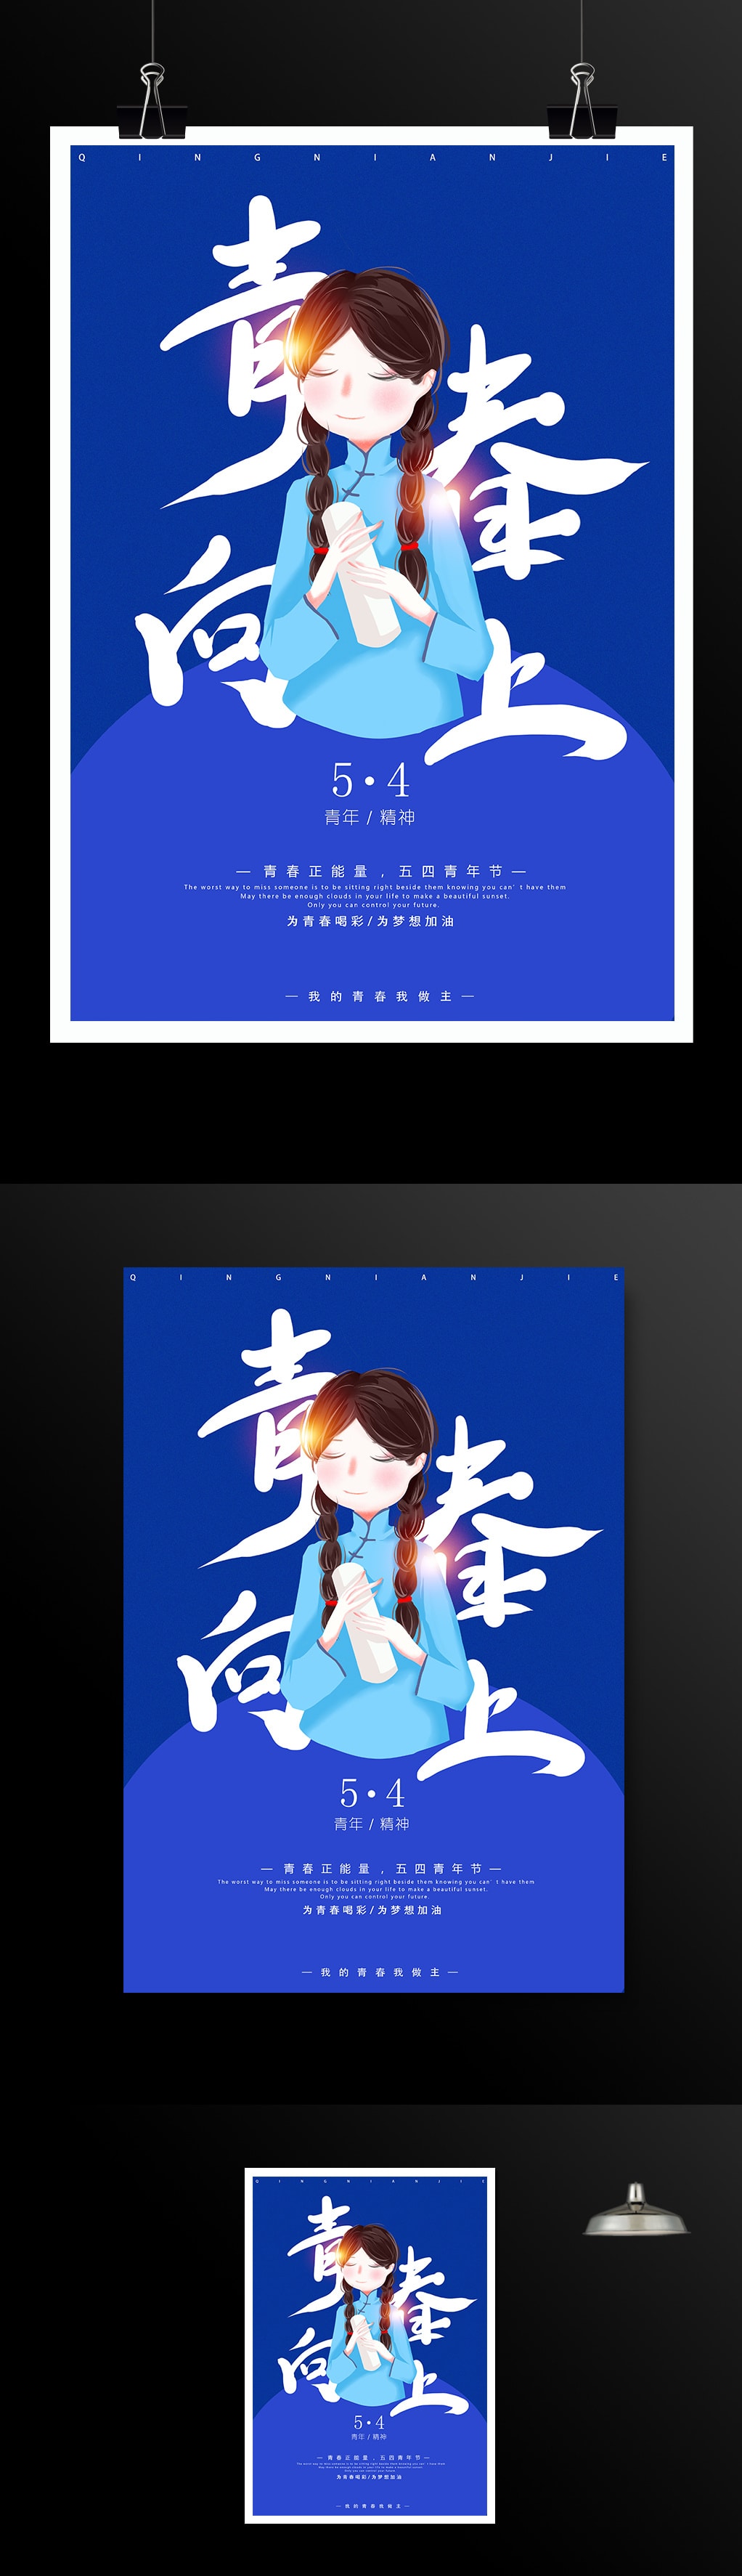 蓝色5.4青年节青年精神海报下载